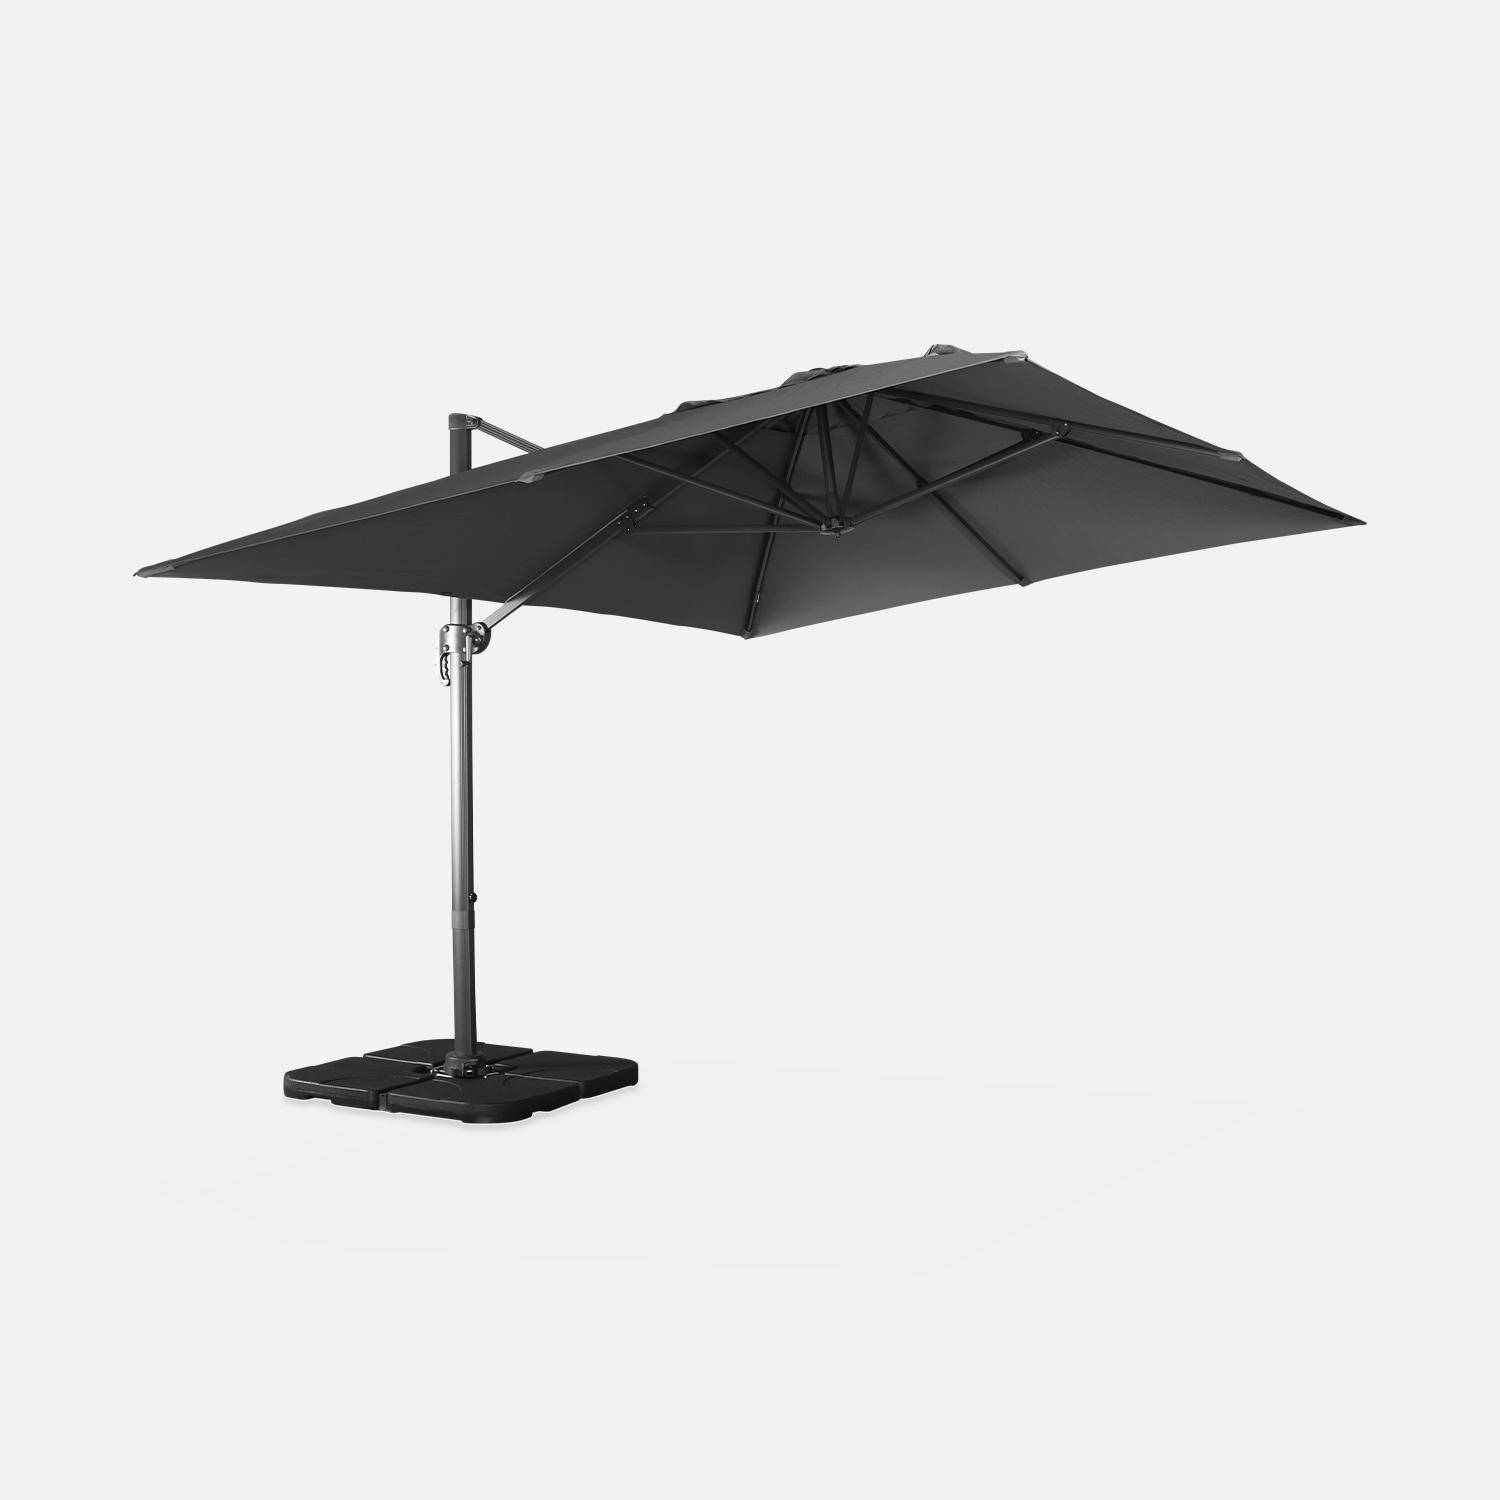 Grijze rechthoekige parasol 3x4m + verzwaarde tegels 50x50cm Photo5